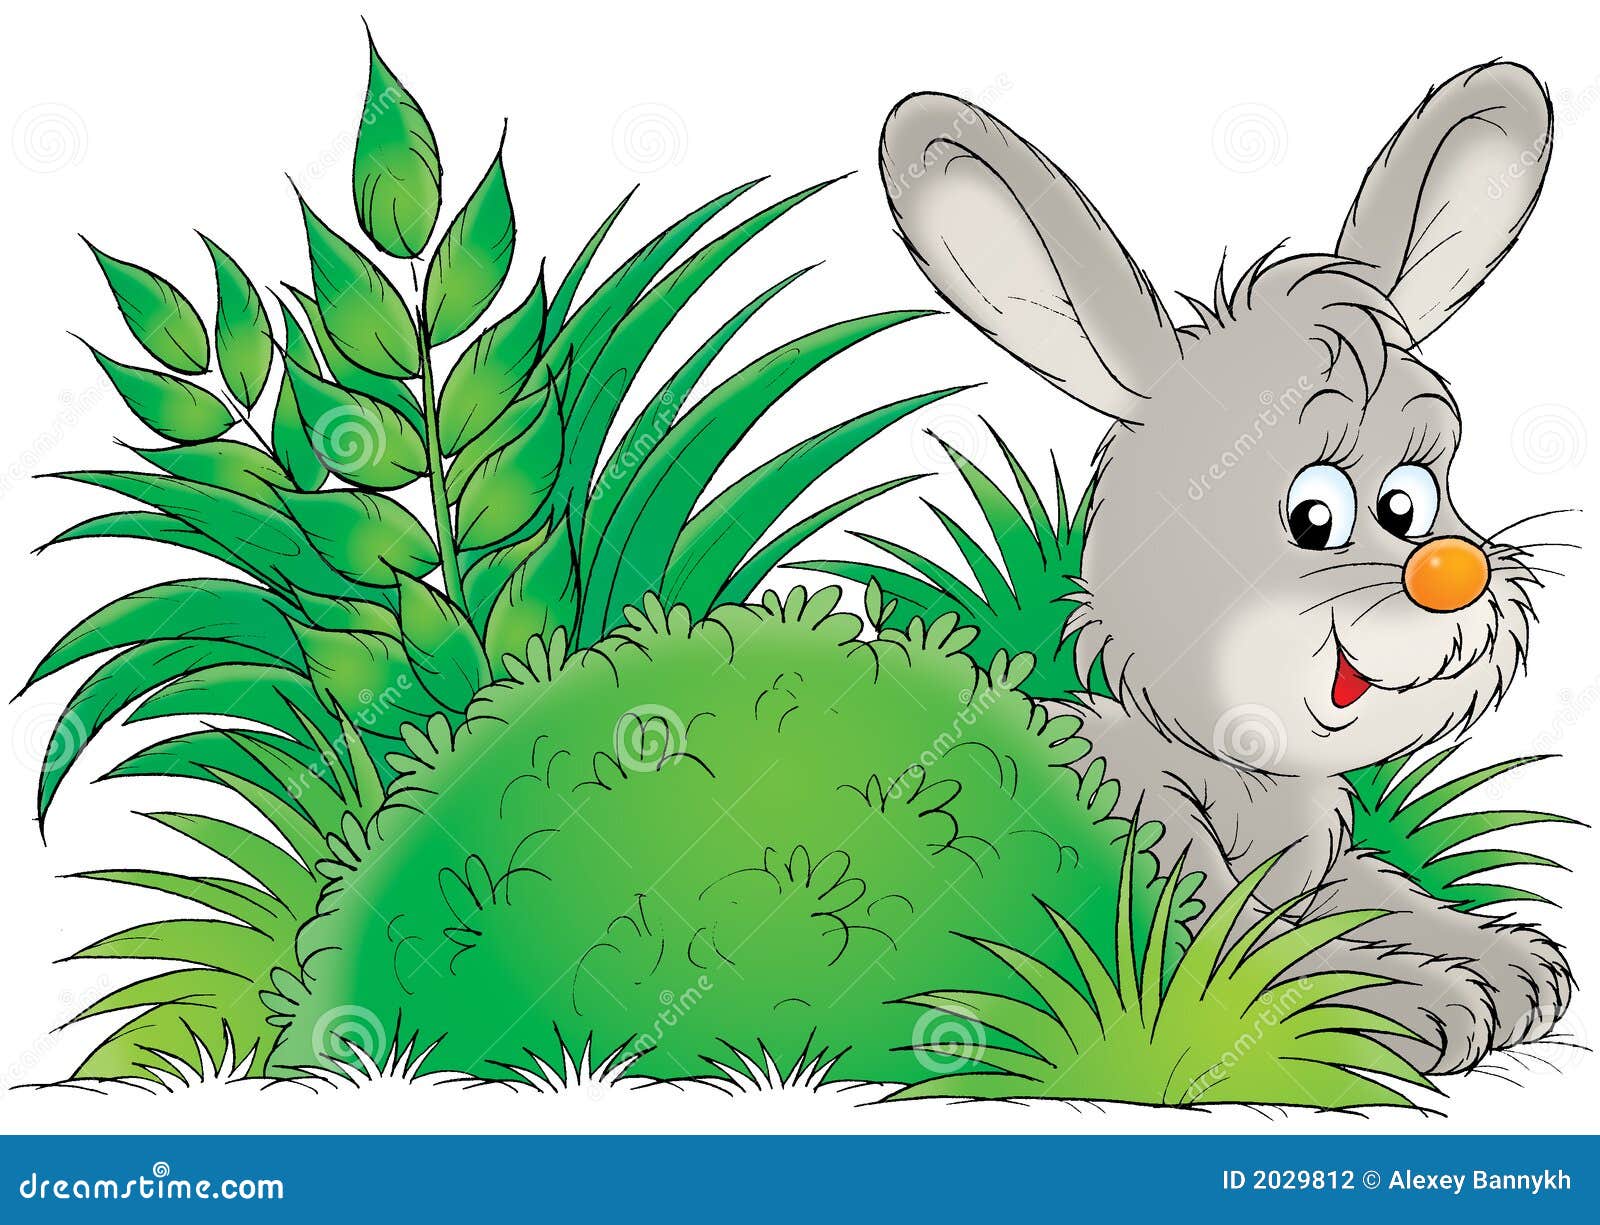 В колючем кустарнике не спрячешься. Заяц за кустом. Зайчик картинка для детей. Зайчик в кустах. Для дошкольников заяц Зайчонок.